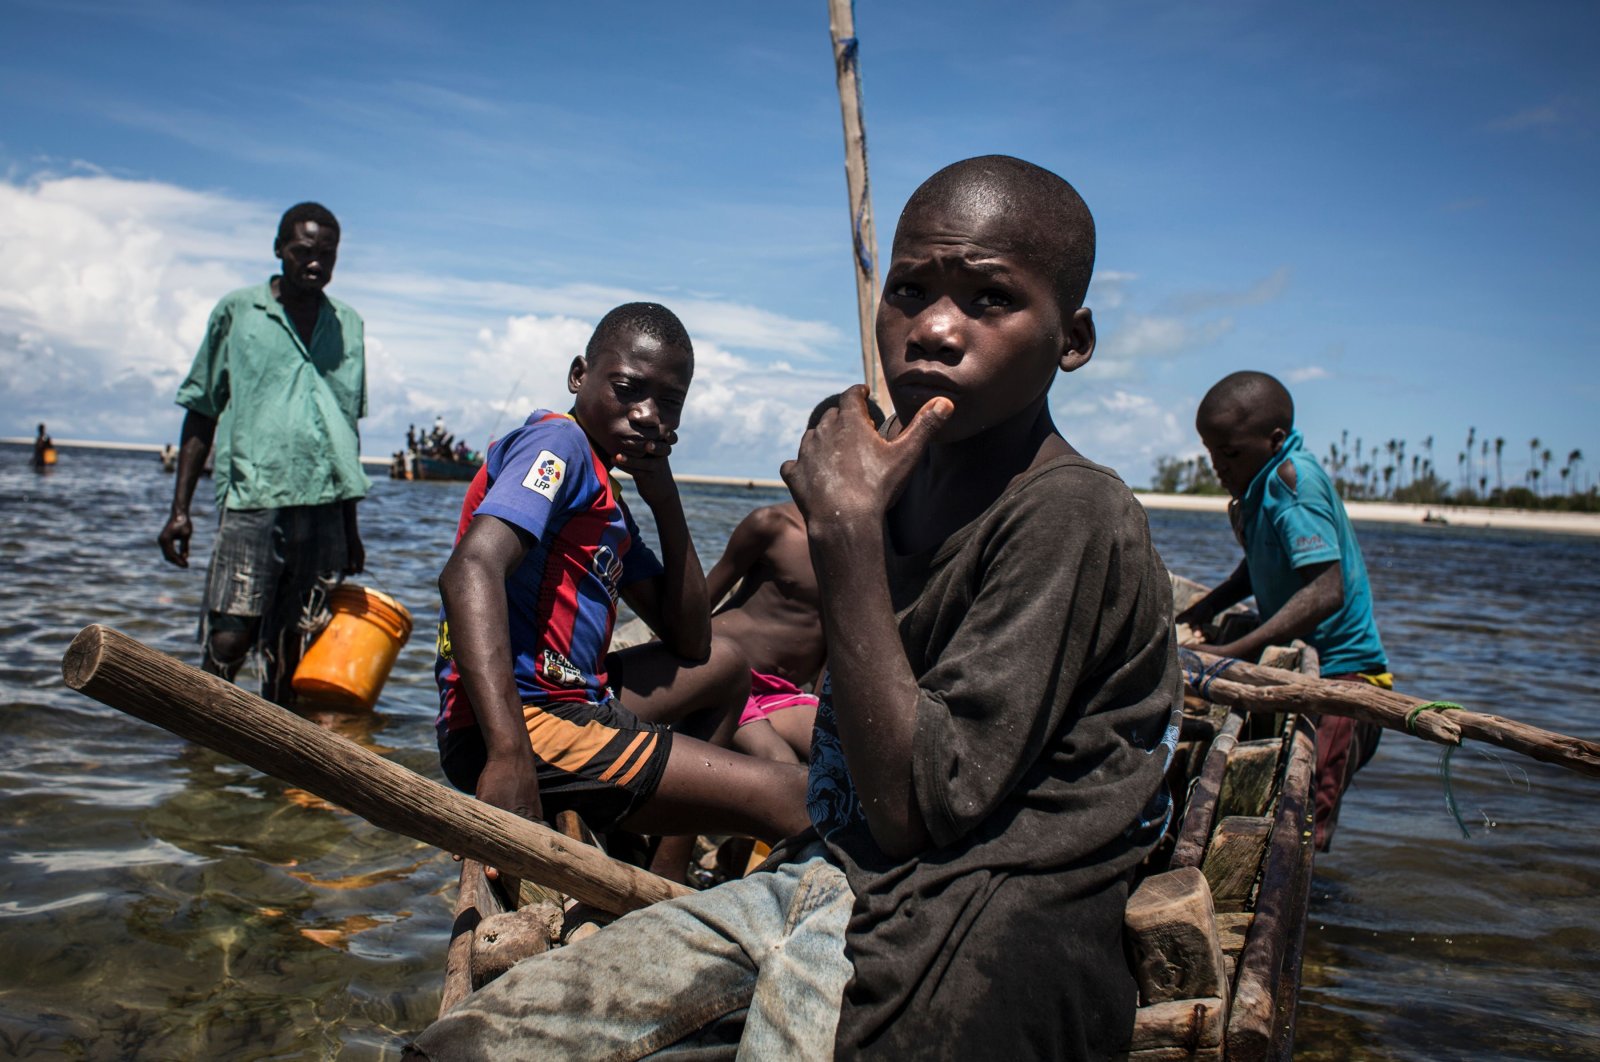 Mozambique militants neck right children, Save the